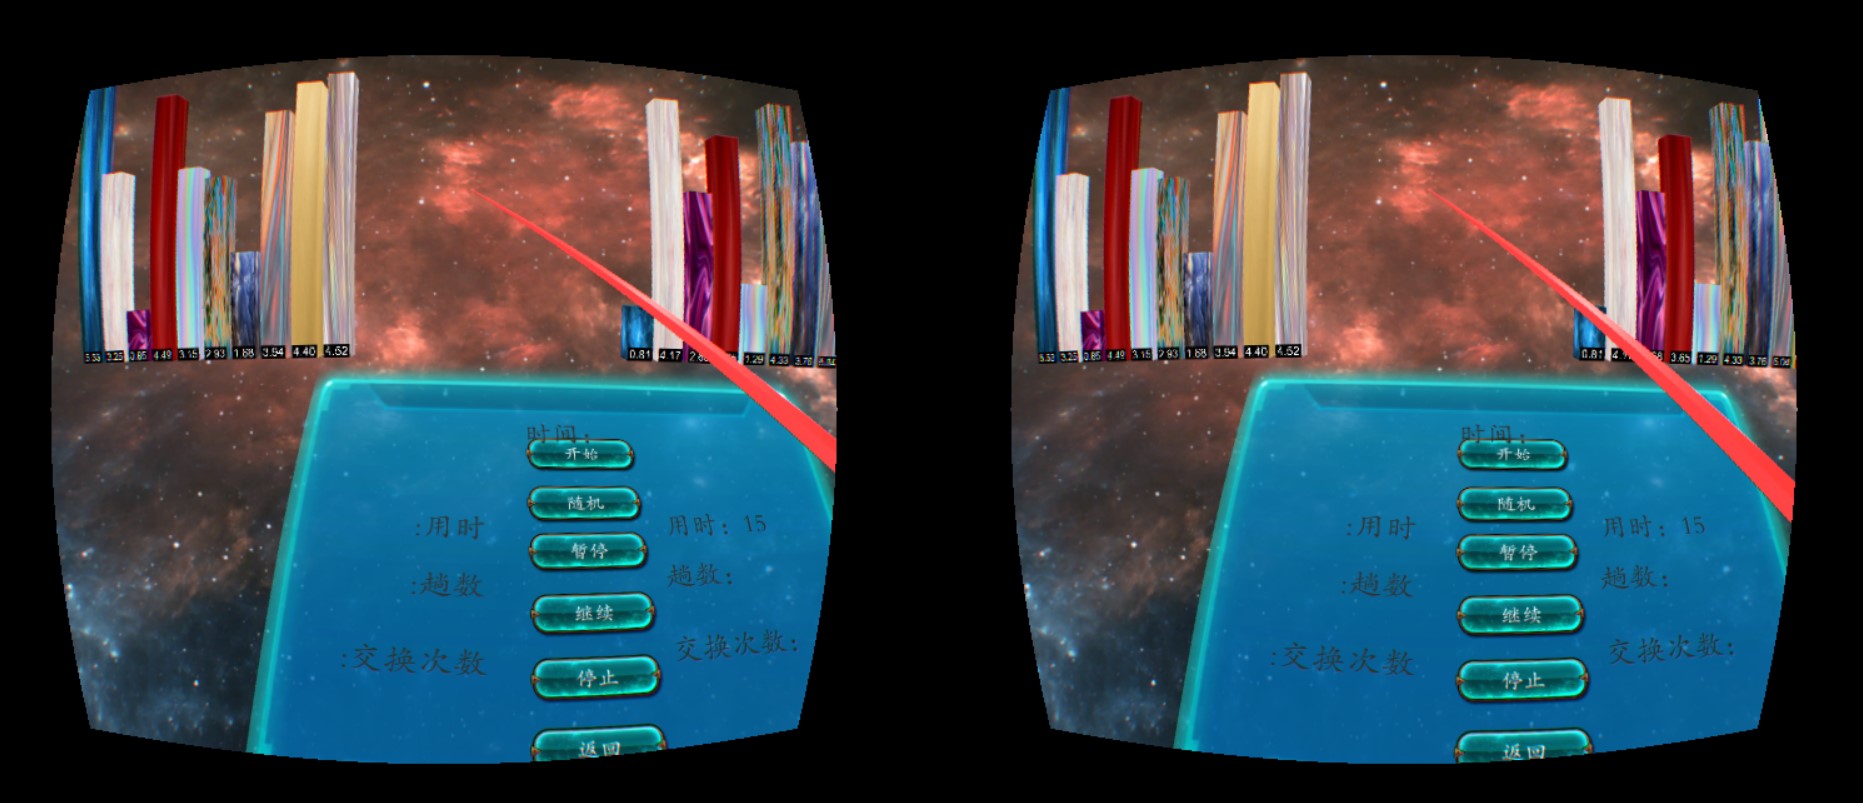 虚拟现实与游戏竞赛作品——排序算法VR可视化